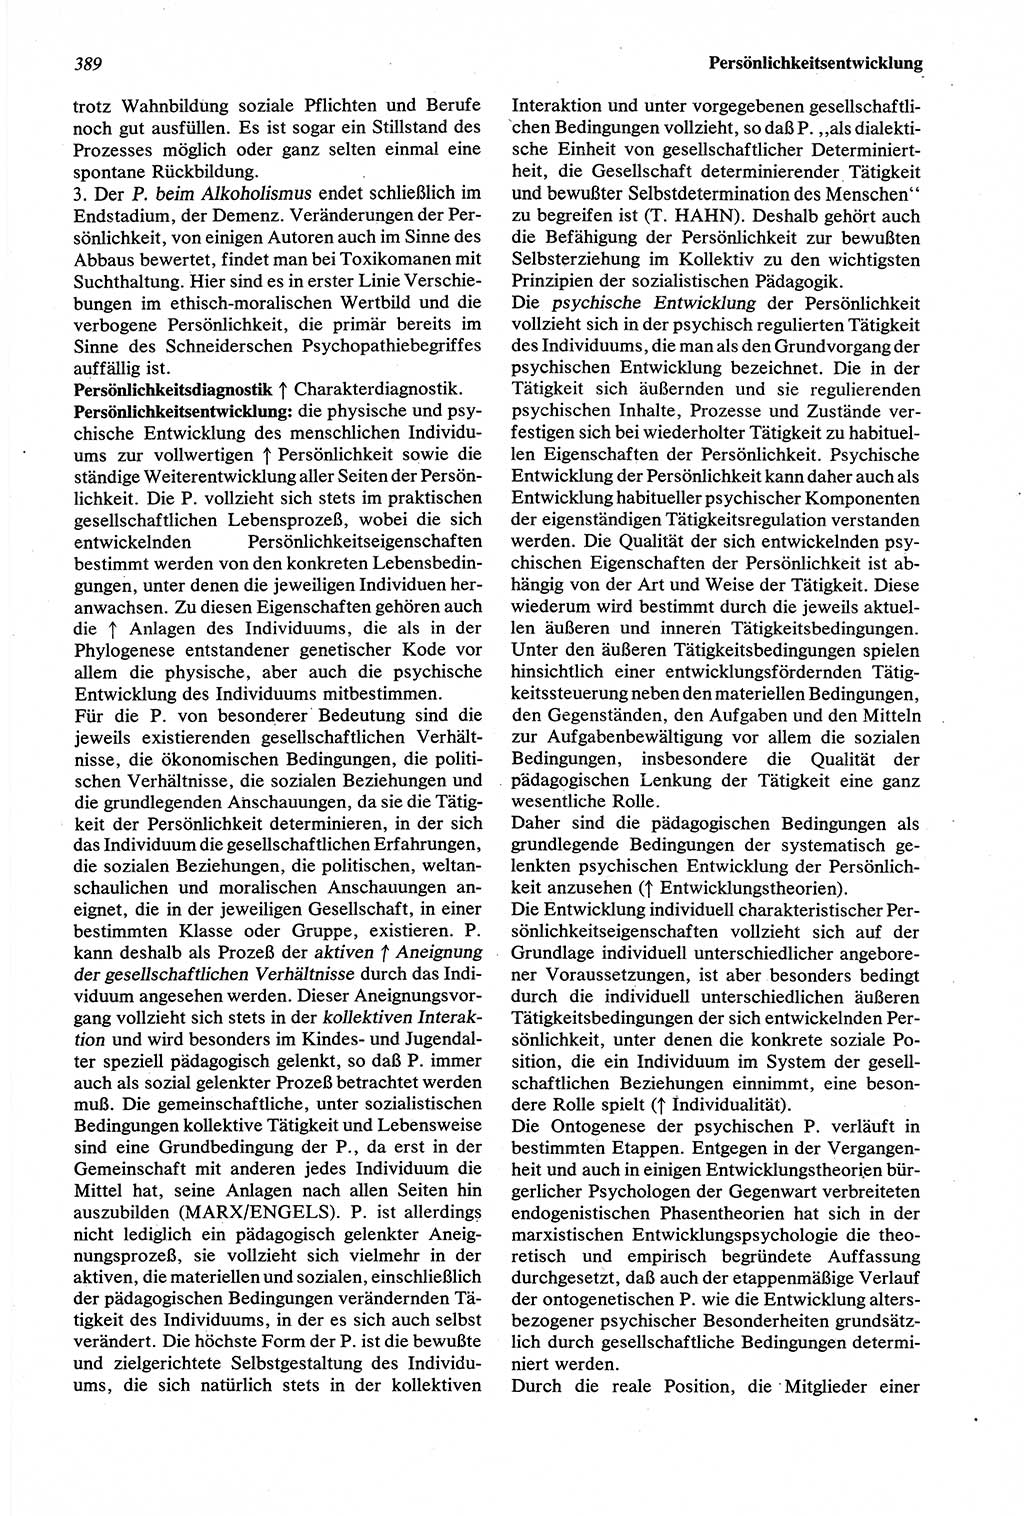 Wörterbuch der Psychologie [Deutsche Demokratische Republik (DDR)] 1976, Seite 389 (Wb. Psych. DDR 1976, S. 389)